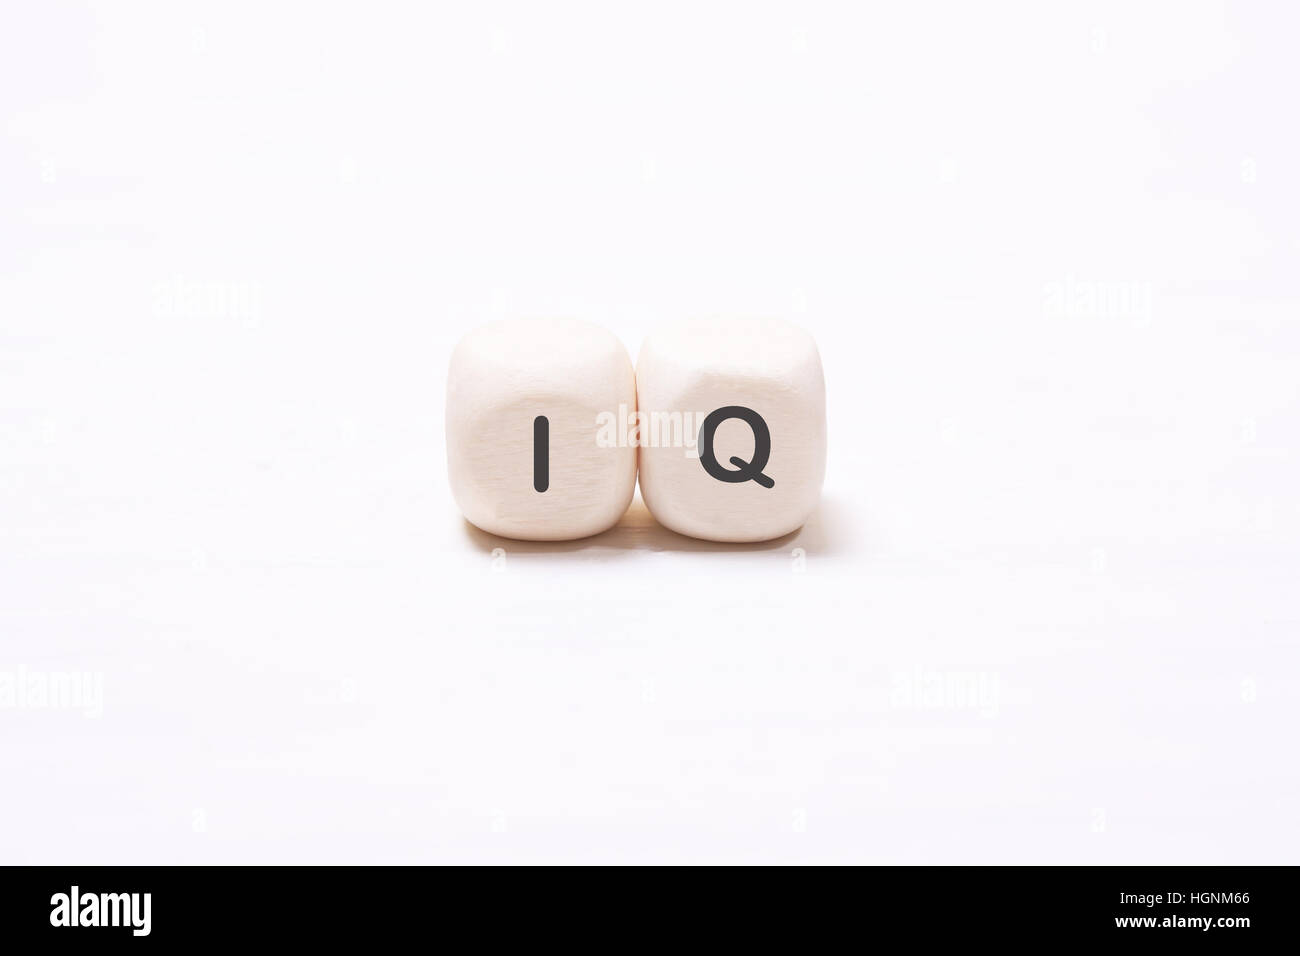 La parola "QI" sul bianco i cubi di legno. Il concetto della mente, l'intelletto Foto Stock